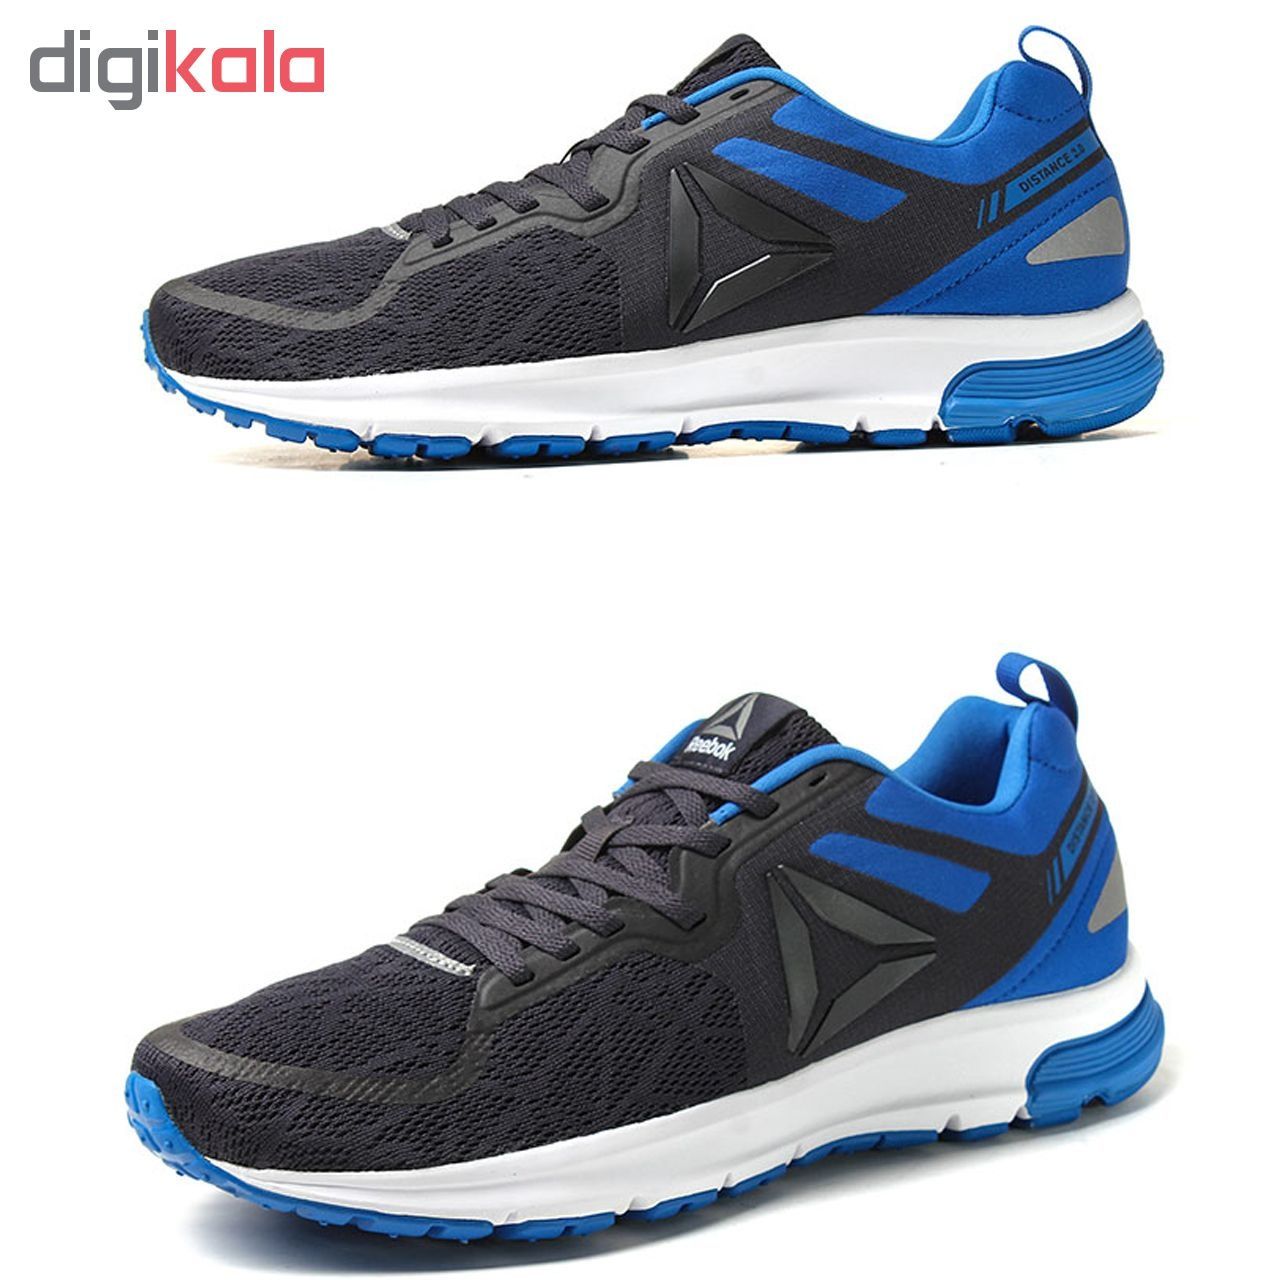  کفش مخصوص دویدن مردانه ریباک مدل One distance کد 65547-08